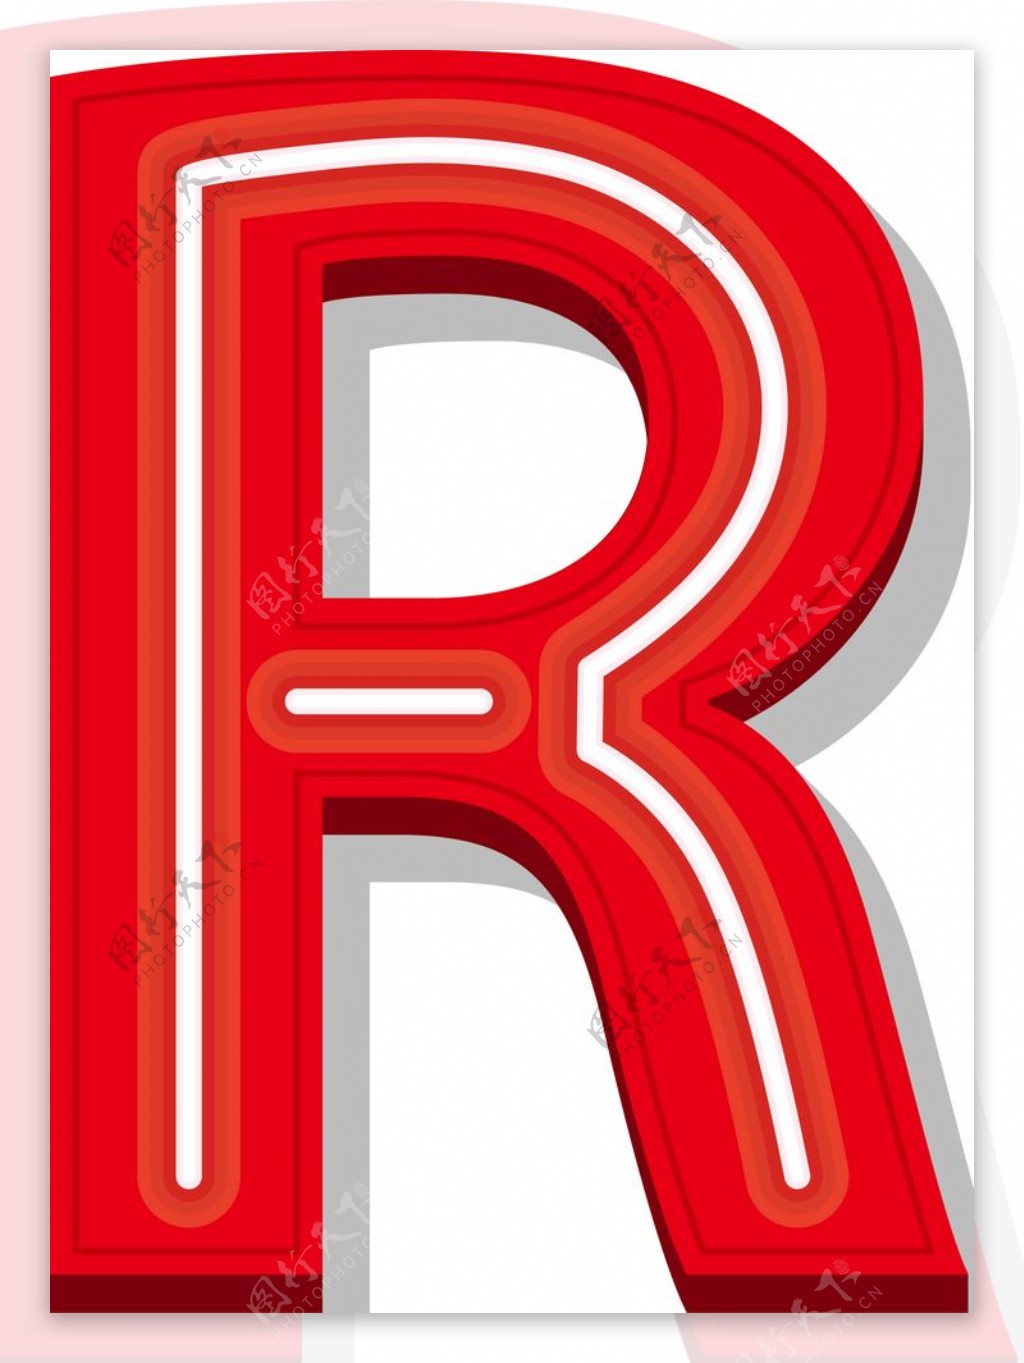 字母R图片